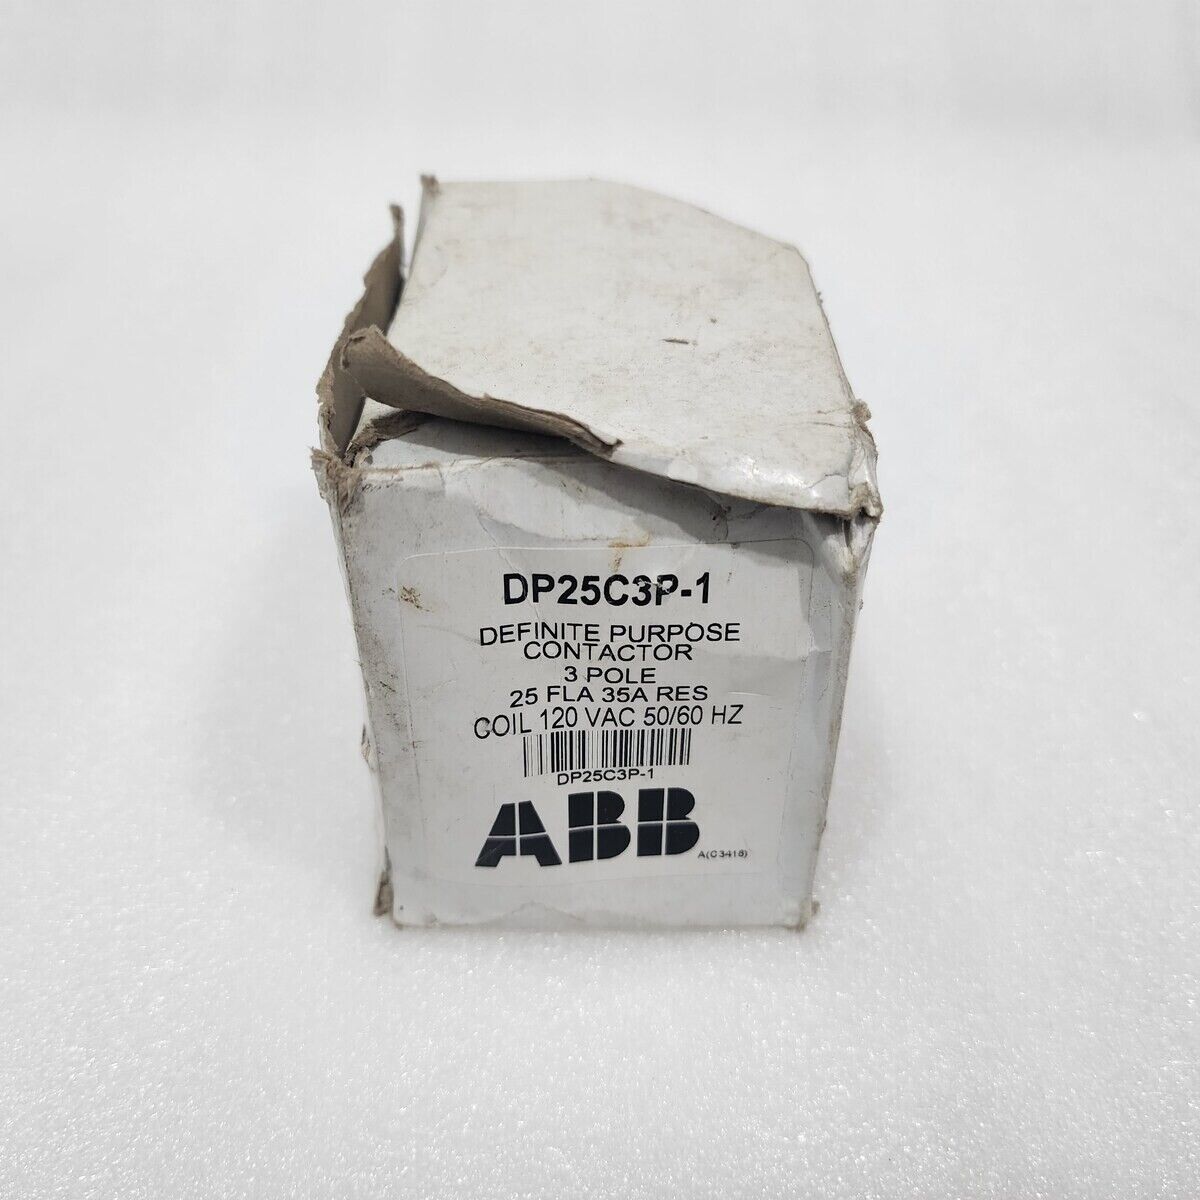 ABB DP25C3P-1 3-POLE DEFINITE PURPOSE CONTACTOR  COIL VOLTAGE 120V